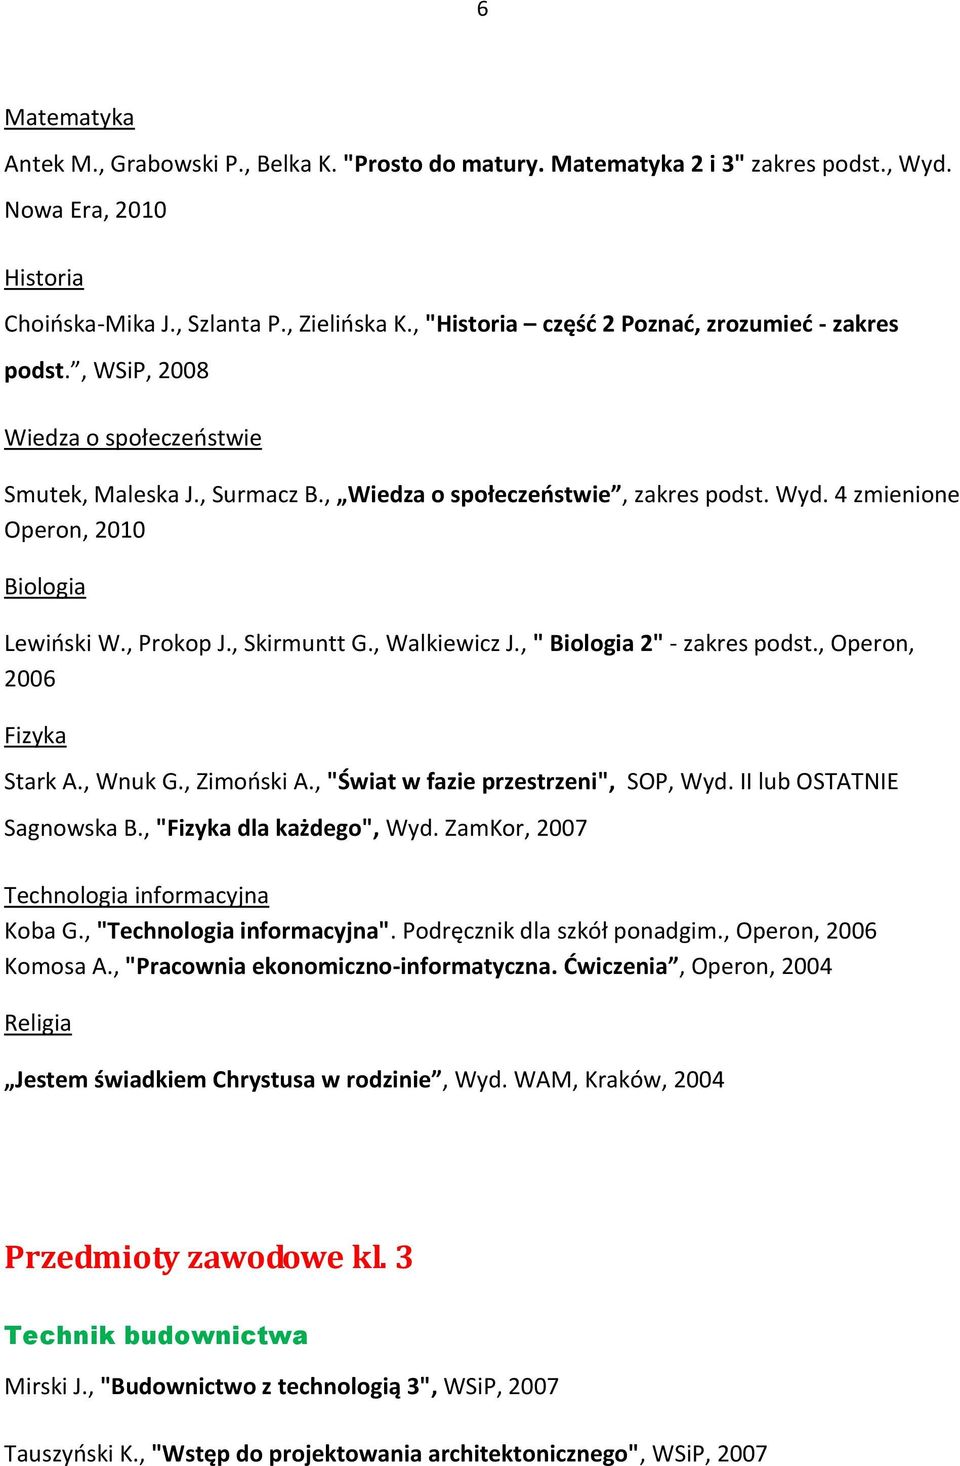 4 zmienione Operon, 2010 Biologia Lewioski W., Prokop J., Skirmuntt G., Walkiewicz J., " Biologia 2" - zakres podst., Operon, 2006 Fizyka Stark A., Wnuk G., Zimooski A.